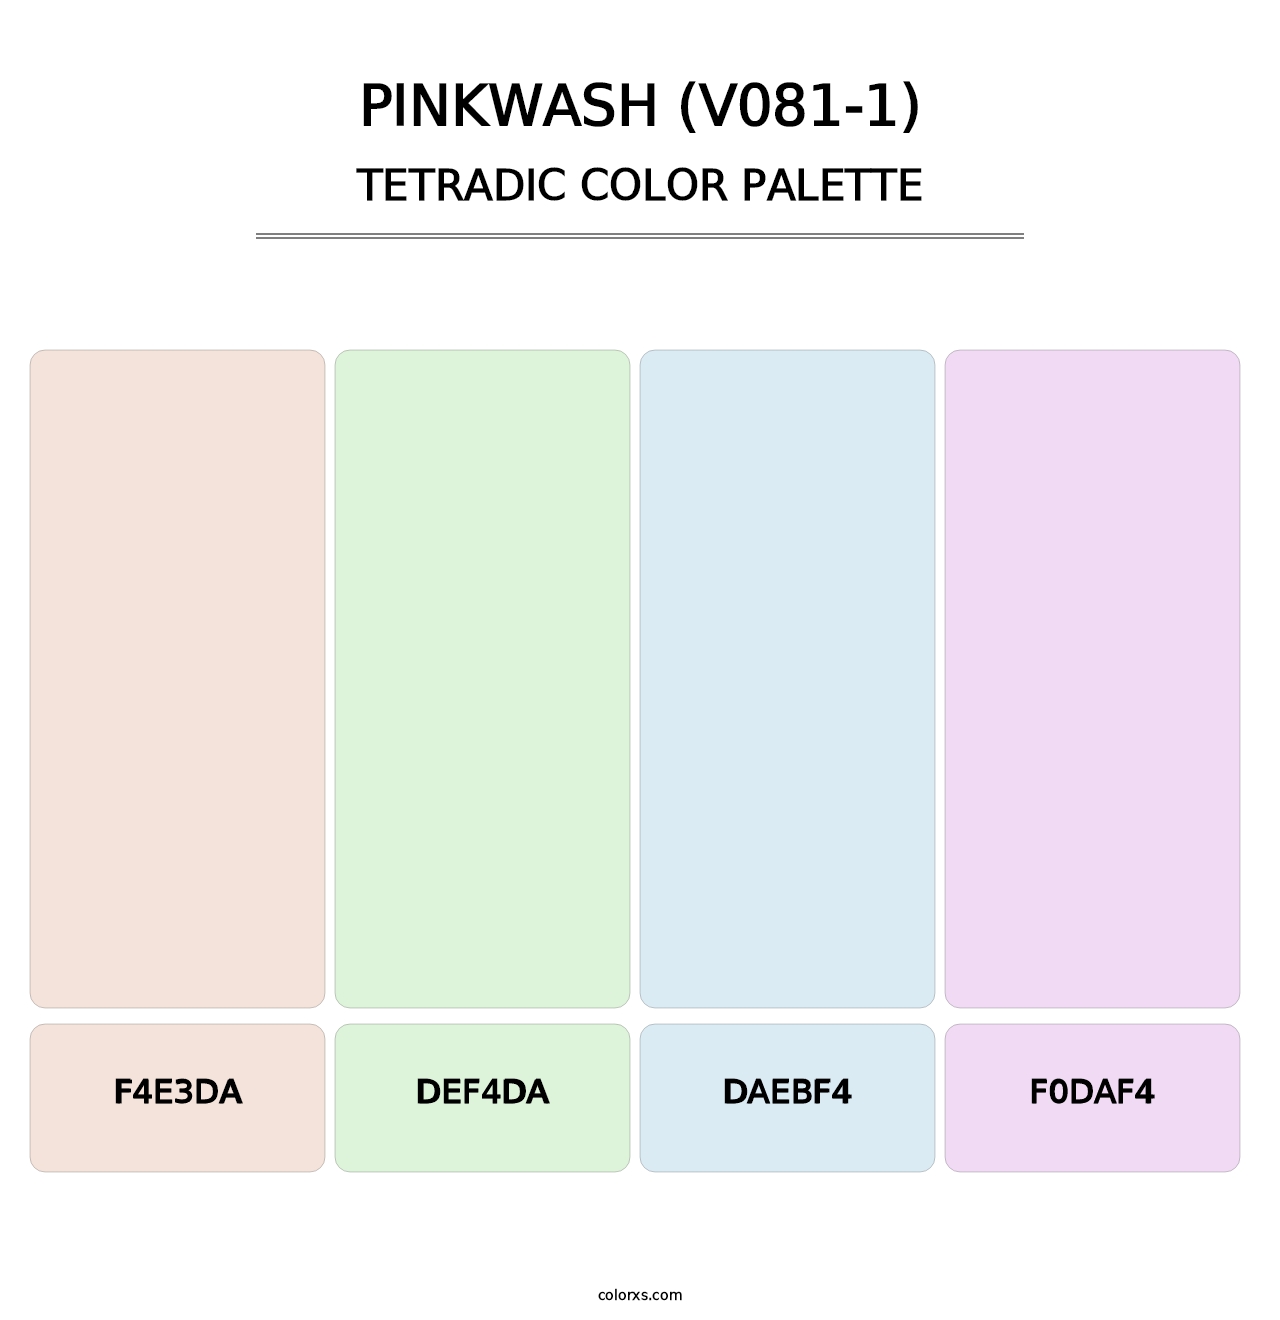 Pinkwash (V081-1) - Tetradic Color Palette